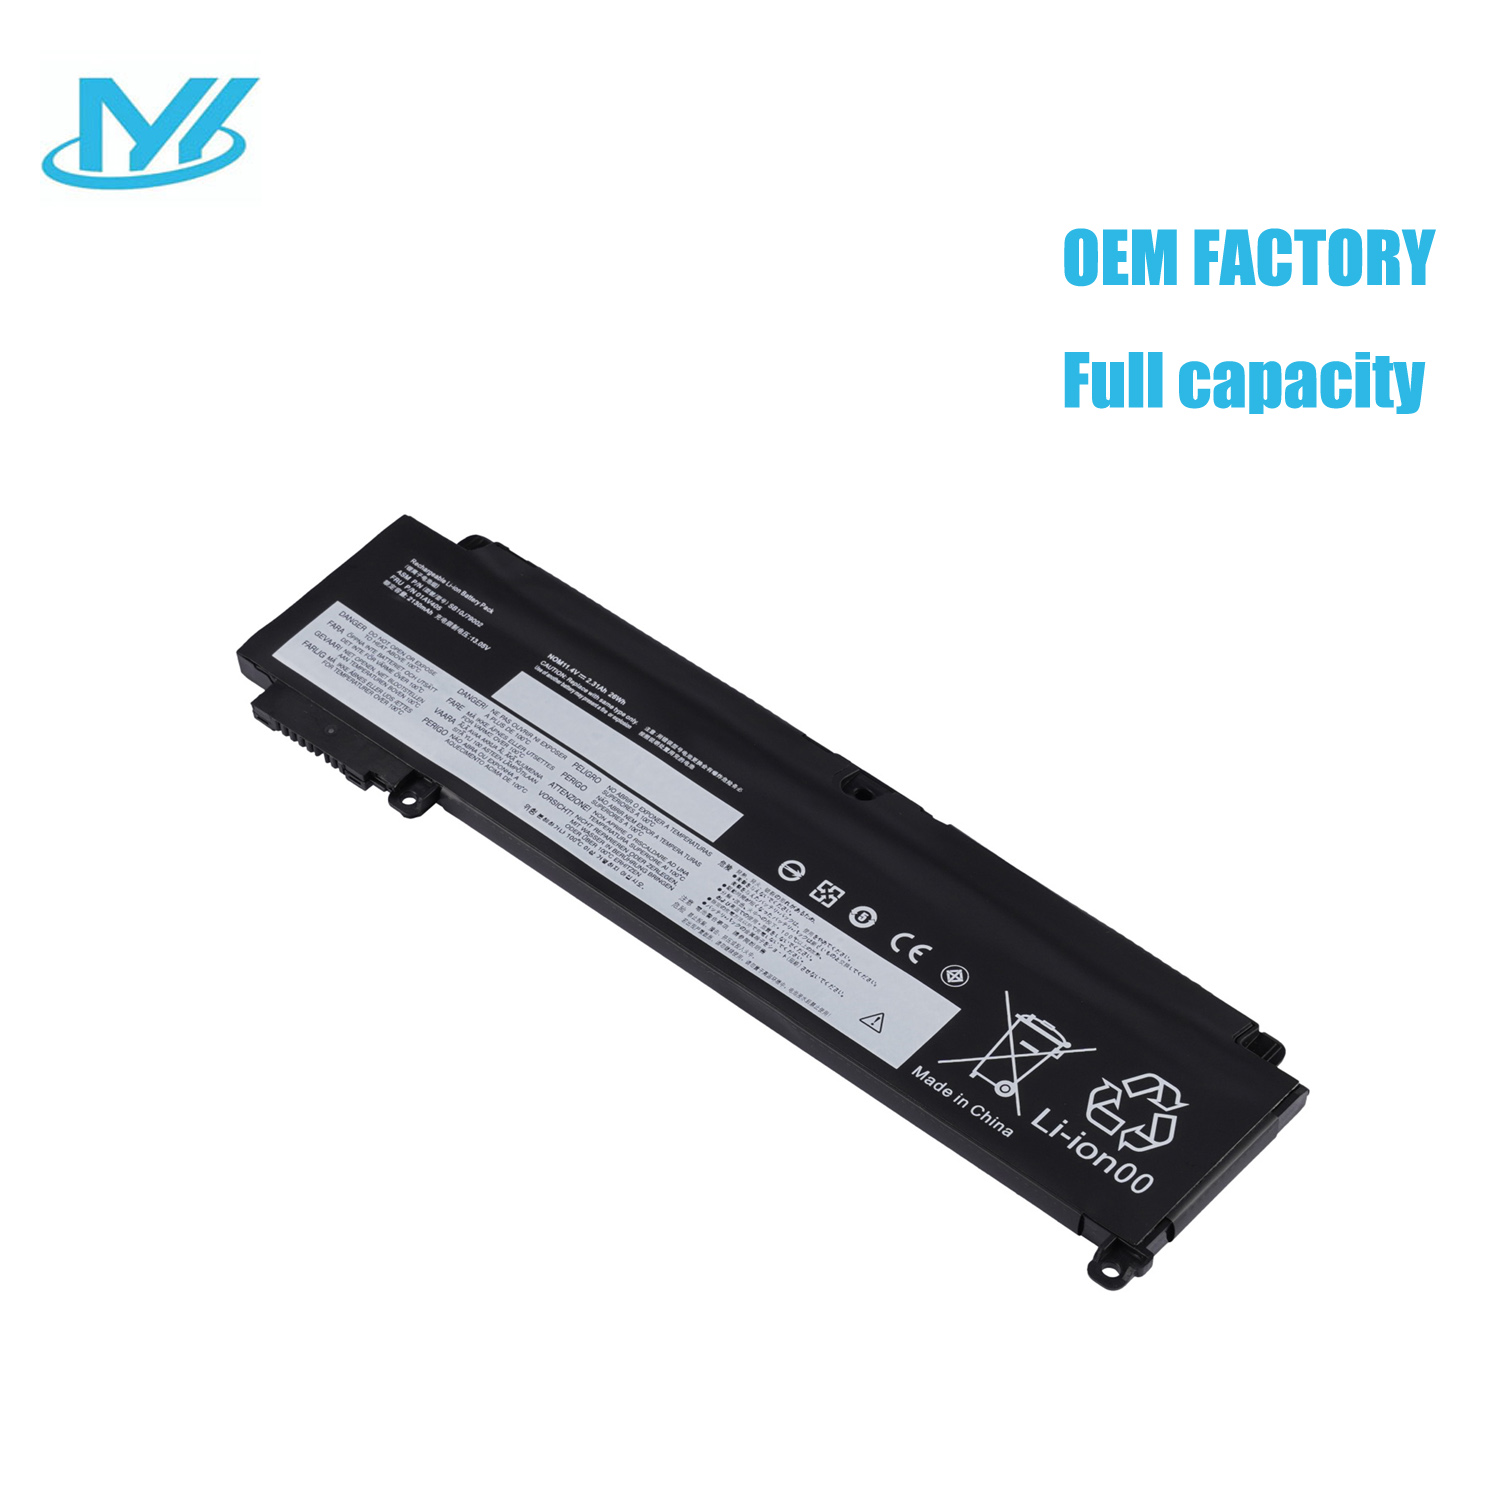 01AV405 rechargeable lithium ion Notebook battery Laptop battery LENOVO ThinkPad T460s 11.1V 24Wh